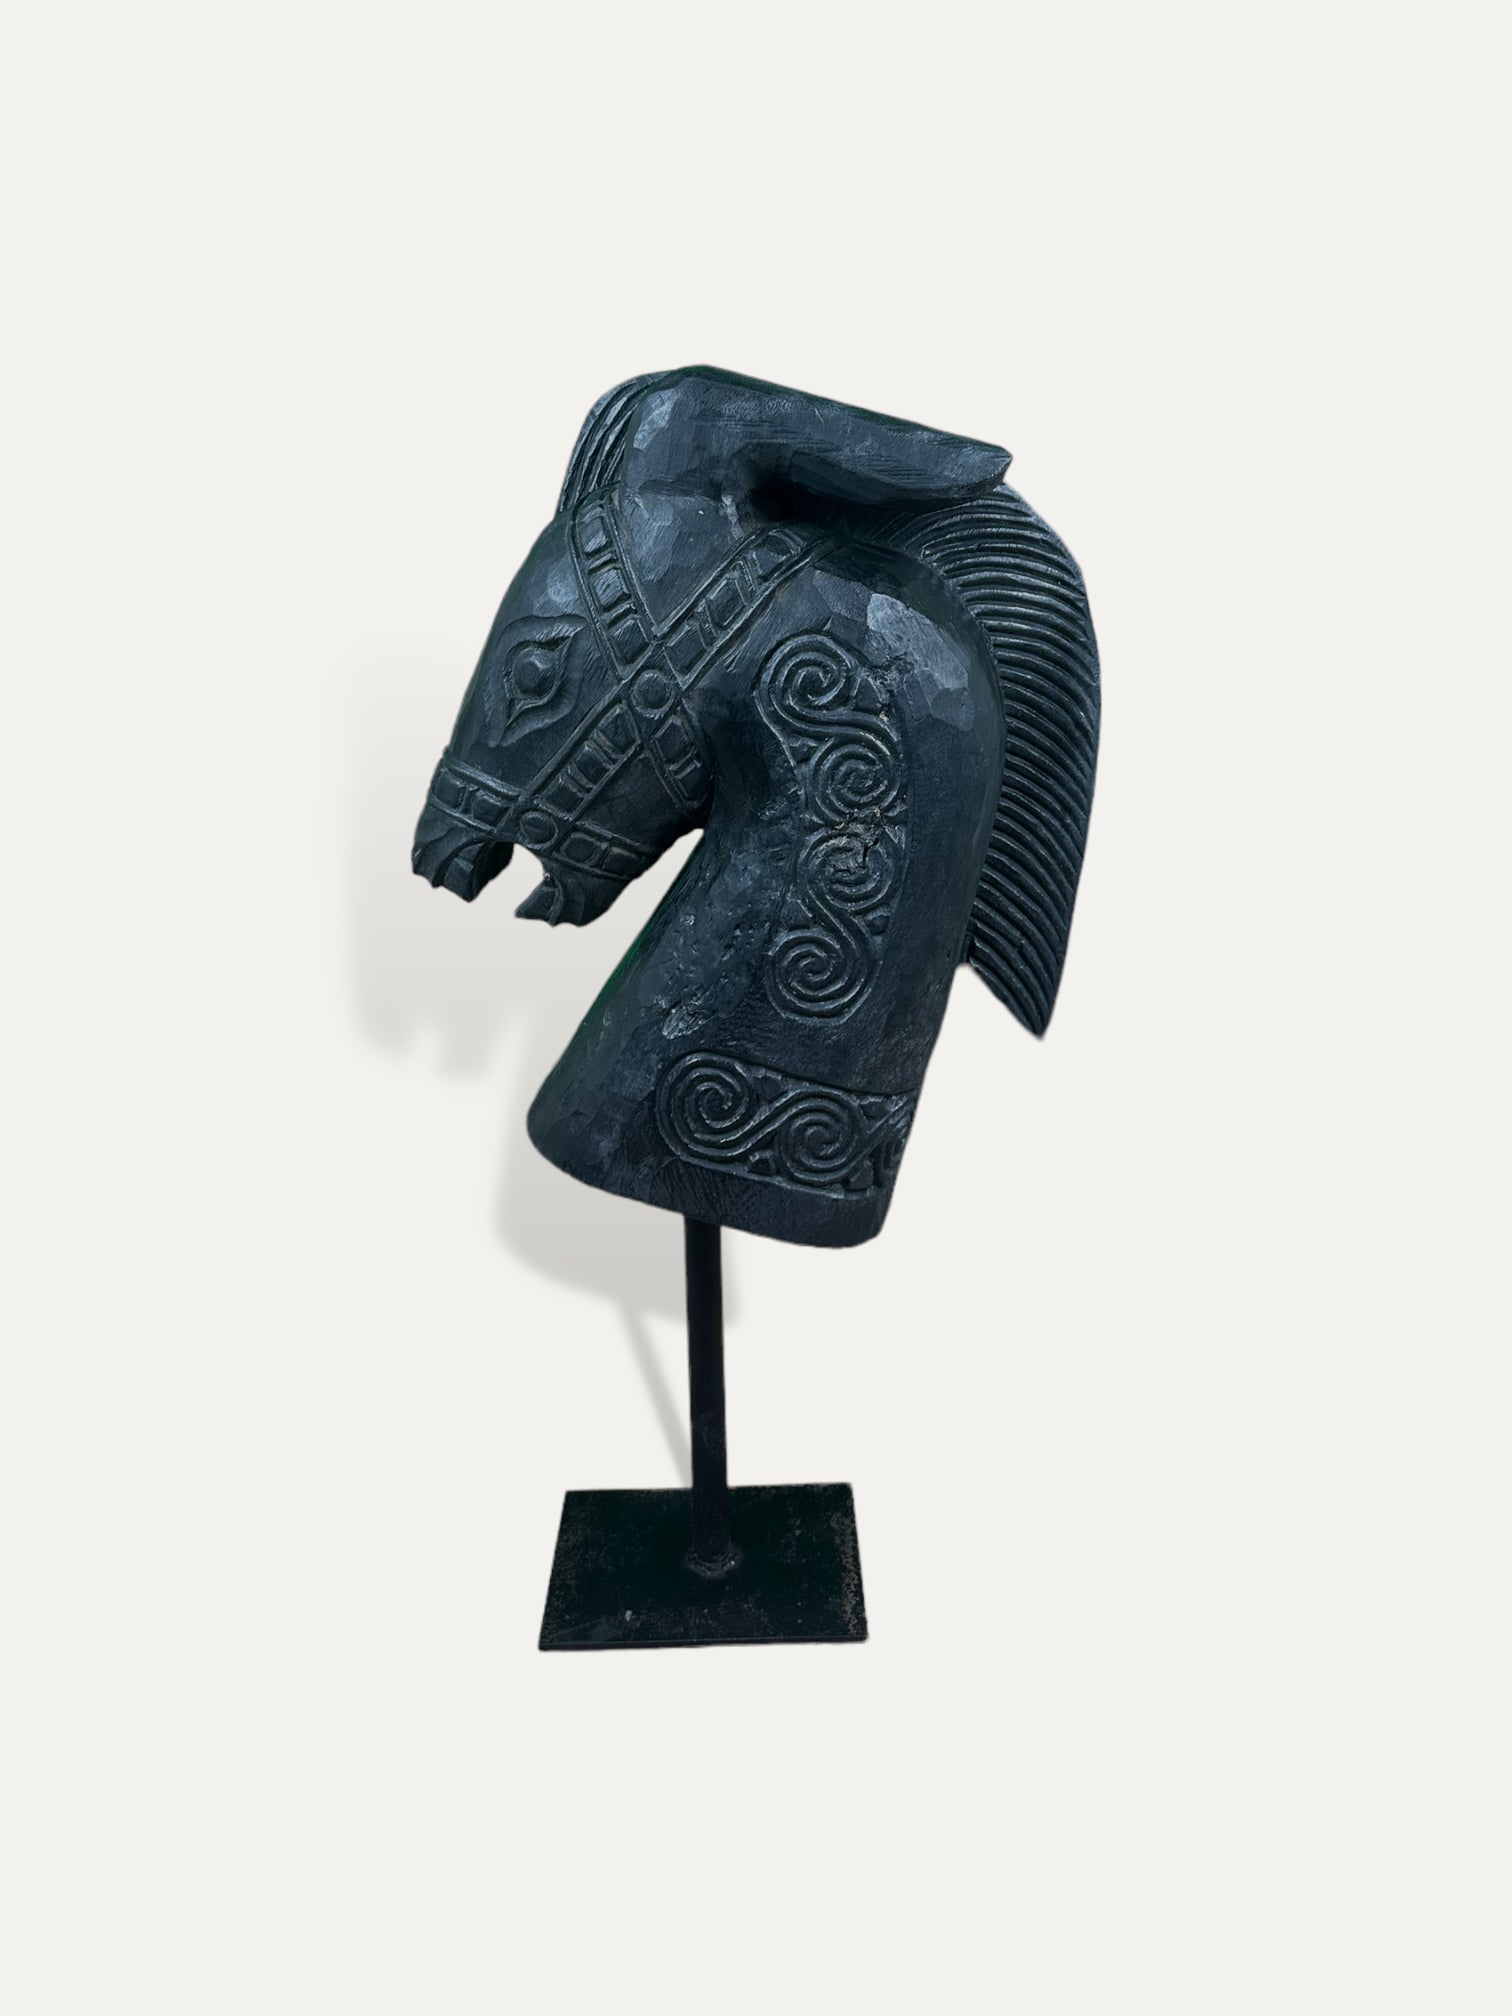 Sculpture d'un buste de cheval - Kuda noir